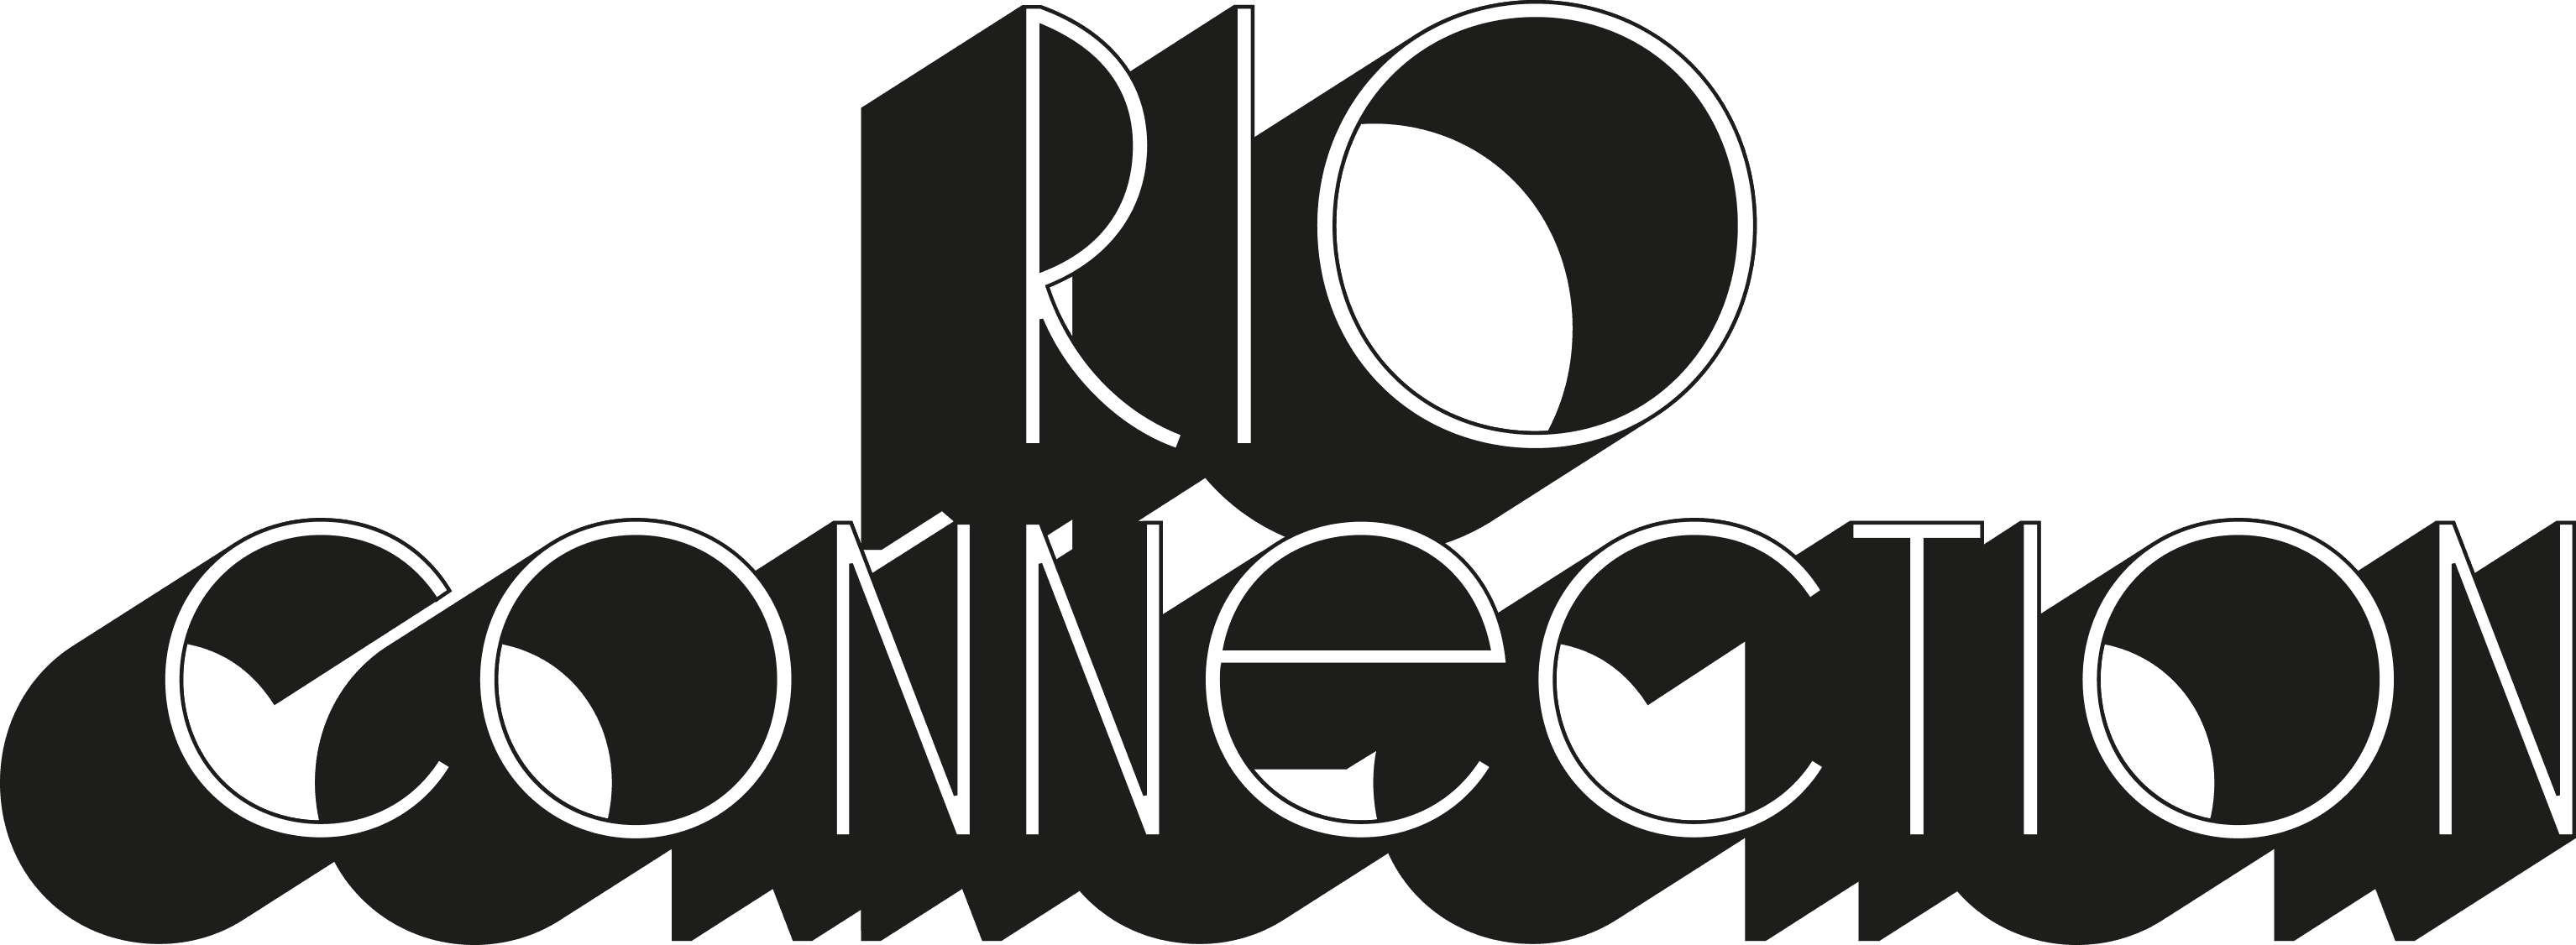 Rio Connection logo